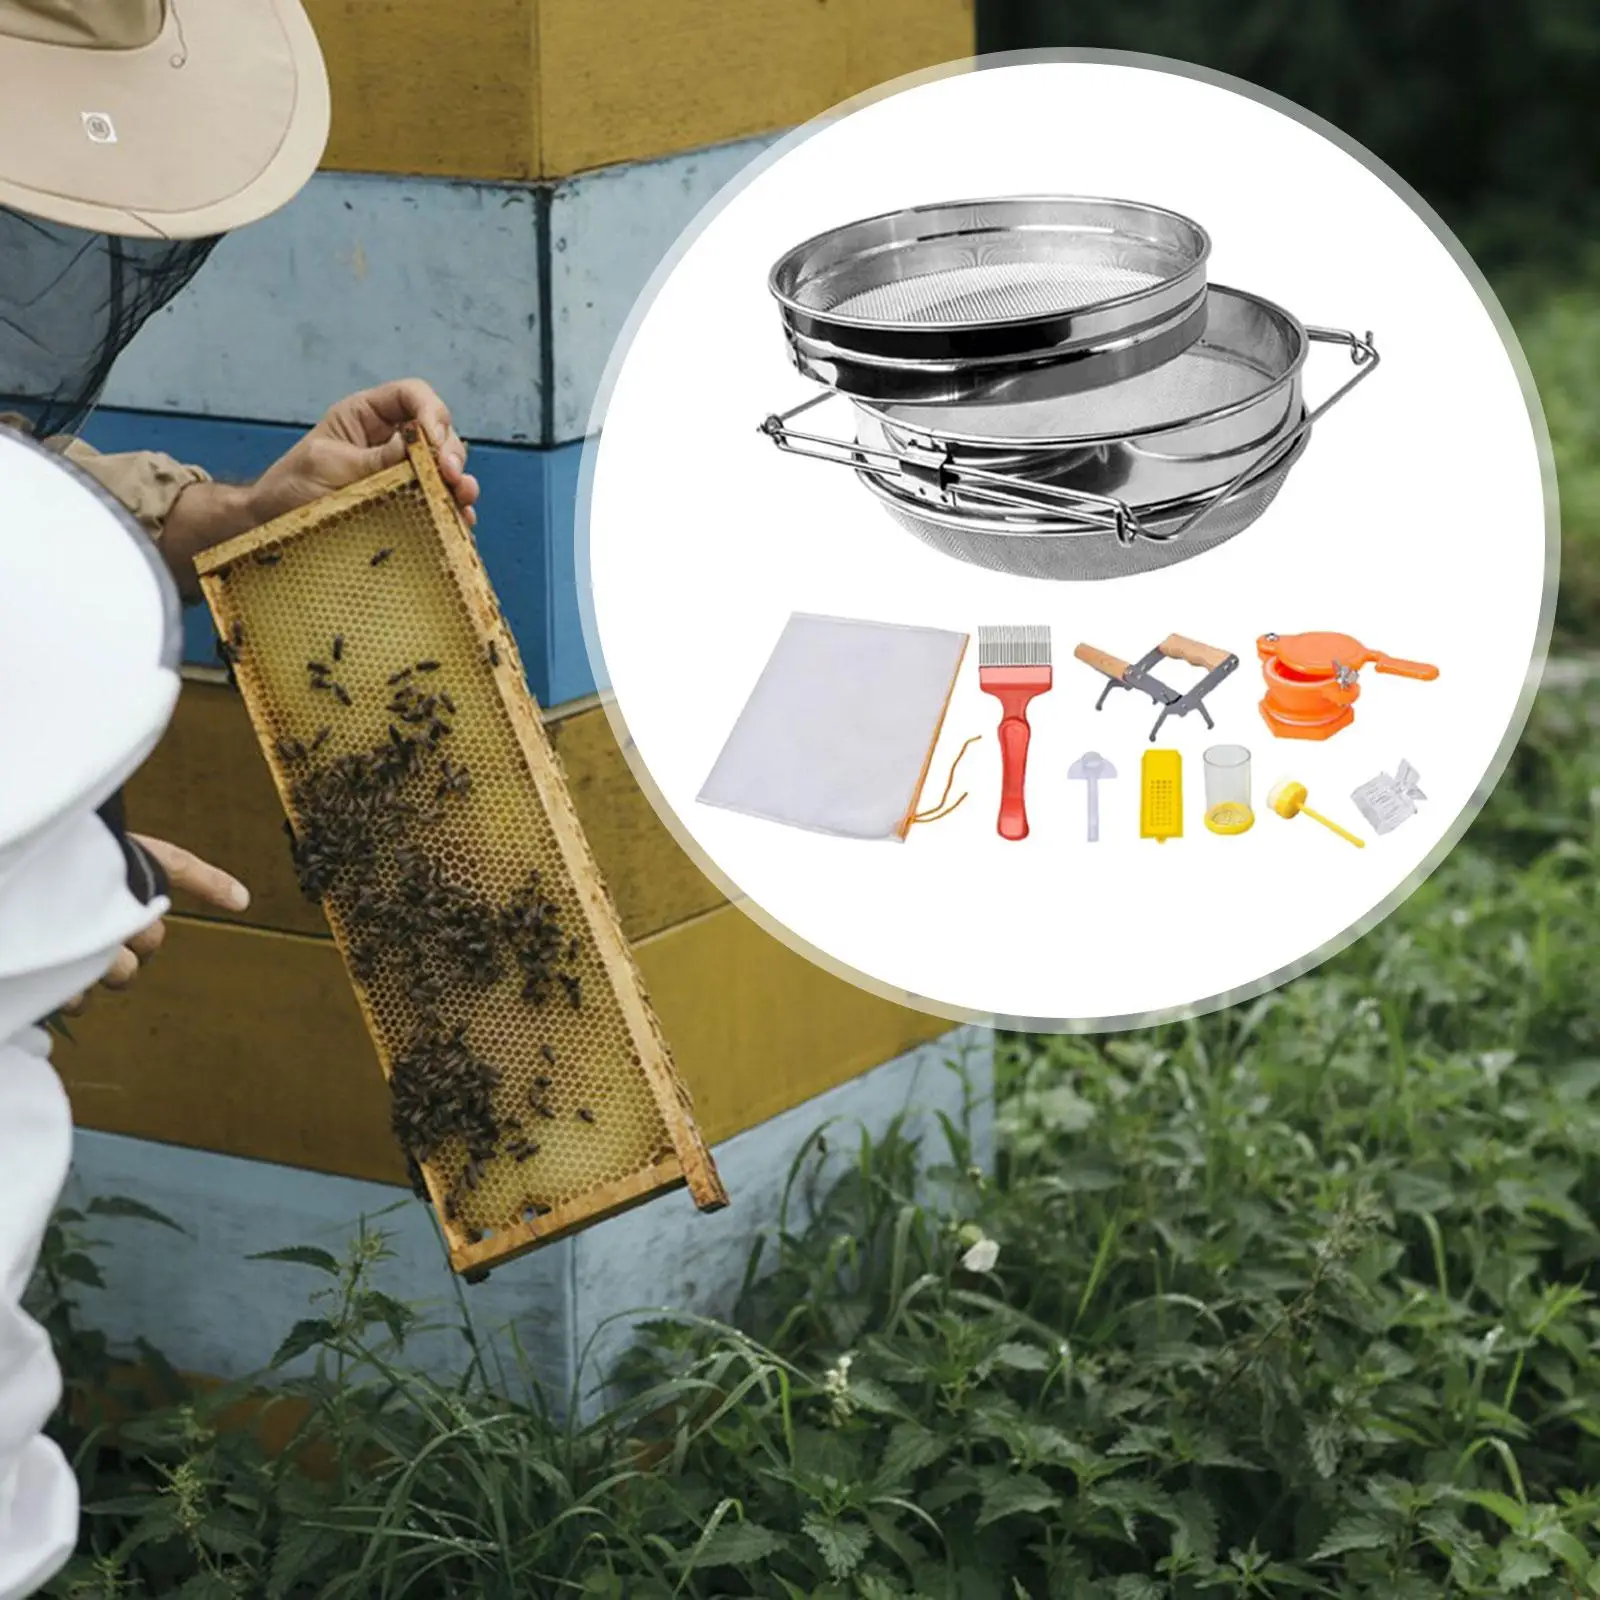 9x Beekeeping Supplies Stainless Steel Filter Net Beekeeping Starter Kits Reusable for Honey Backyard Beginners Farm